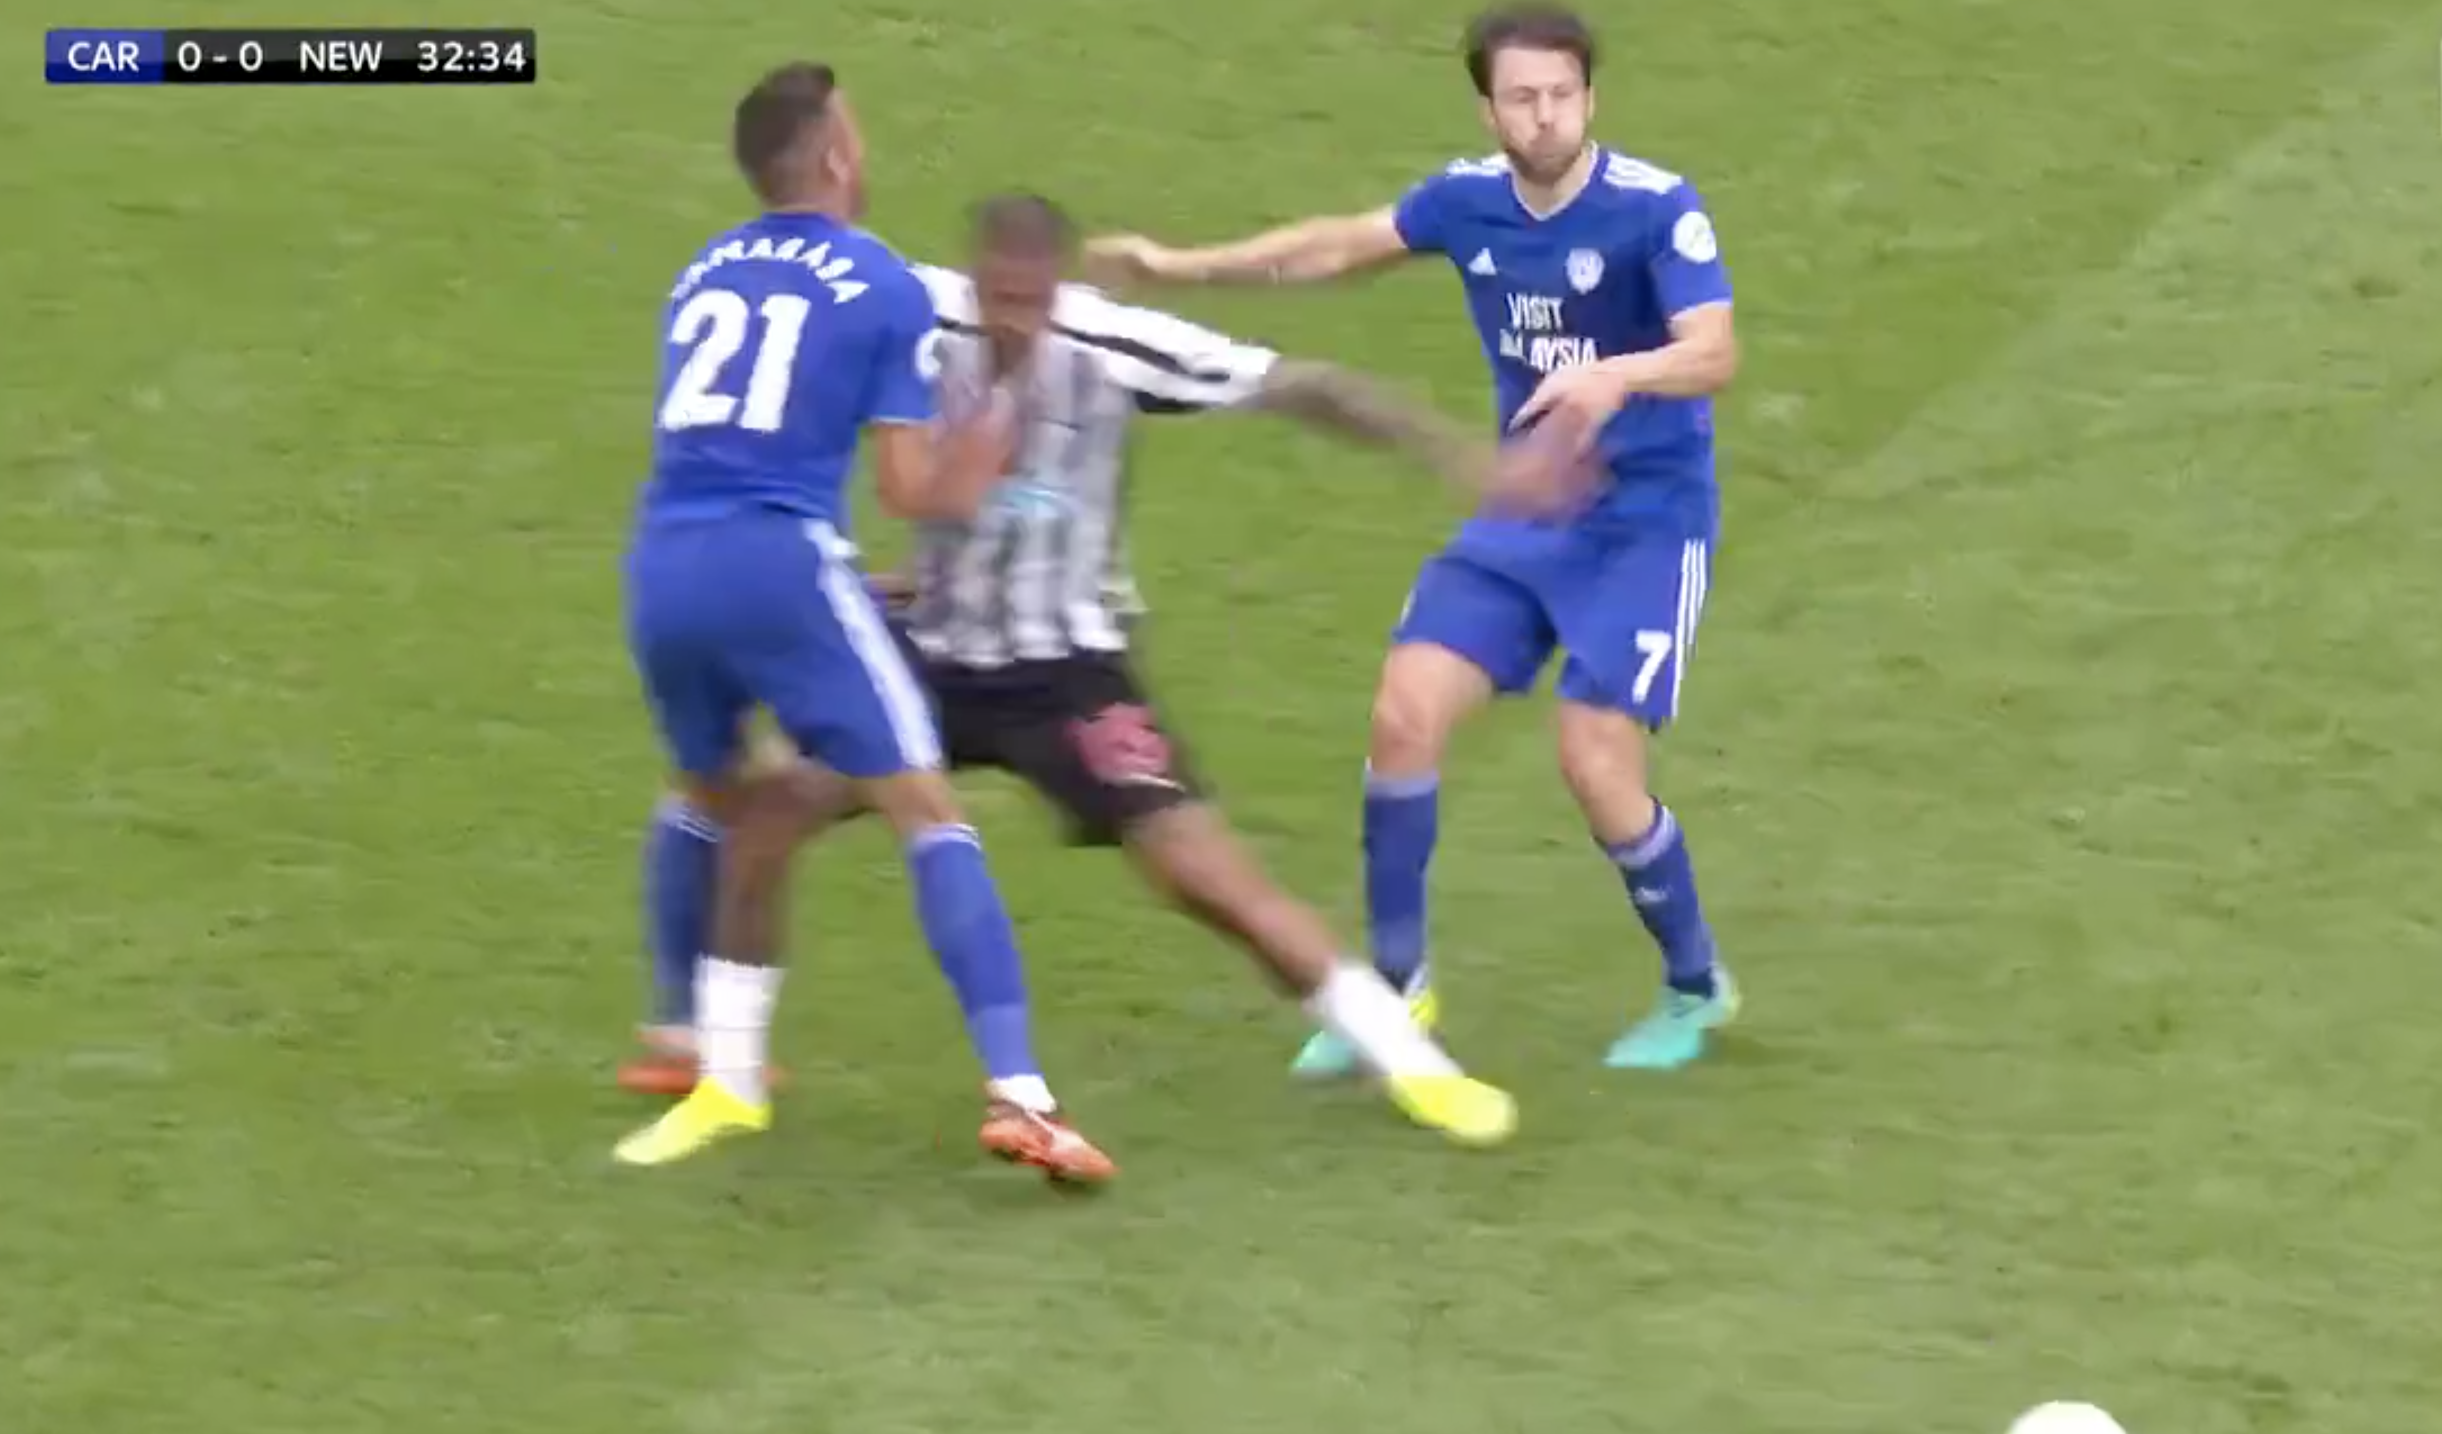 Skuffelse en gang Bliv såret Newcastle's Kenedy escapes a red card for blatant kick at Víctor Camarasa -  JOE.co.uk